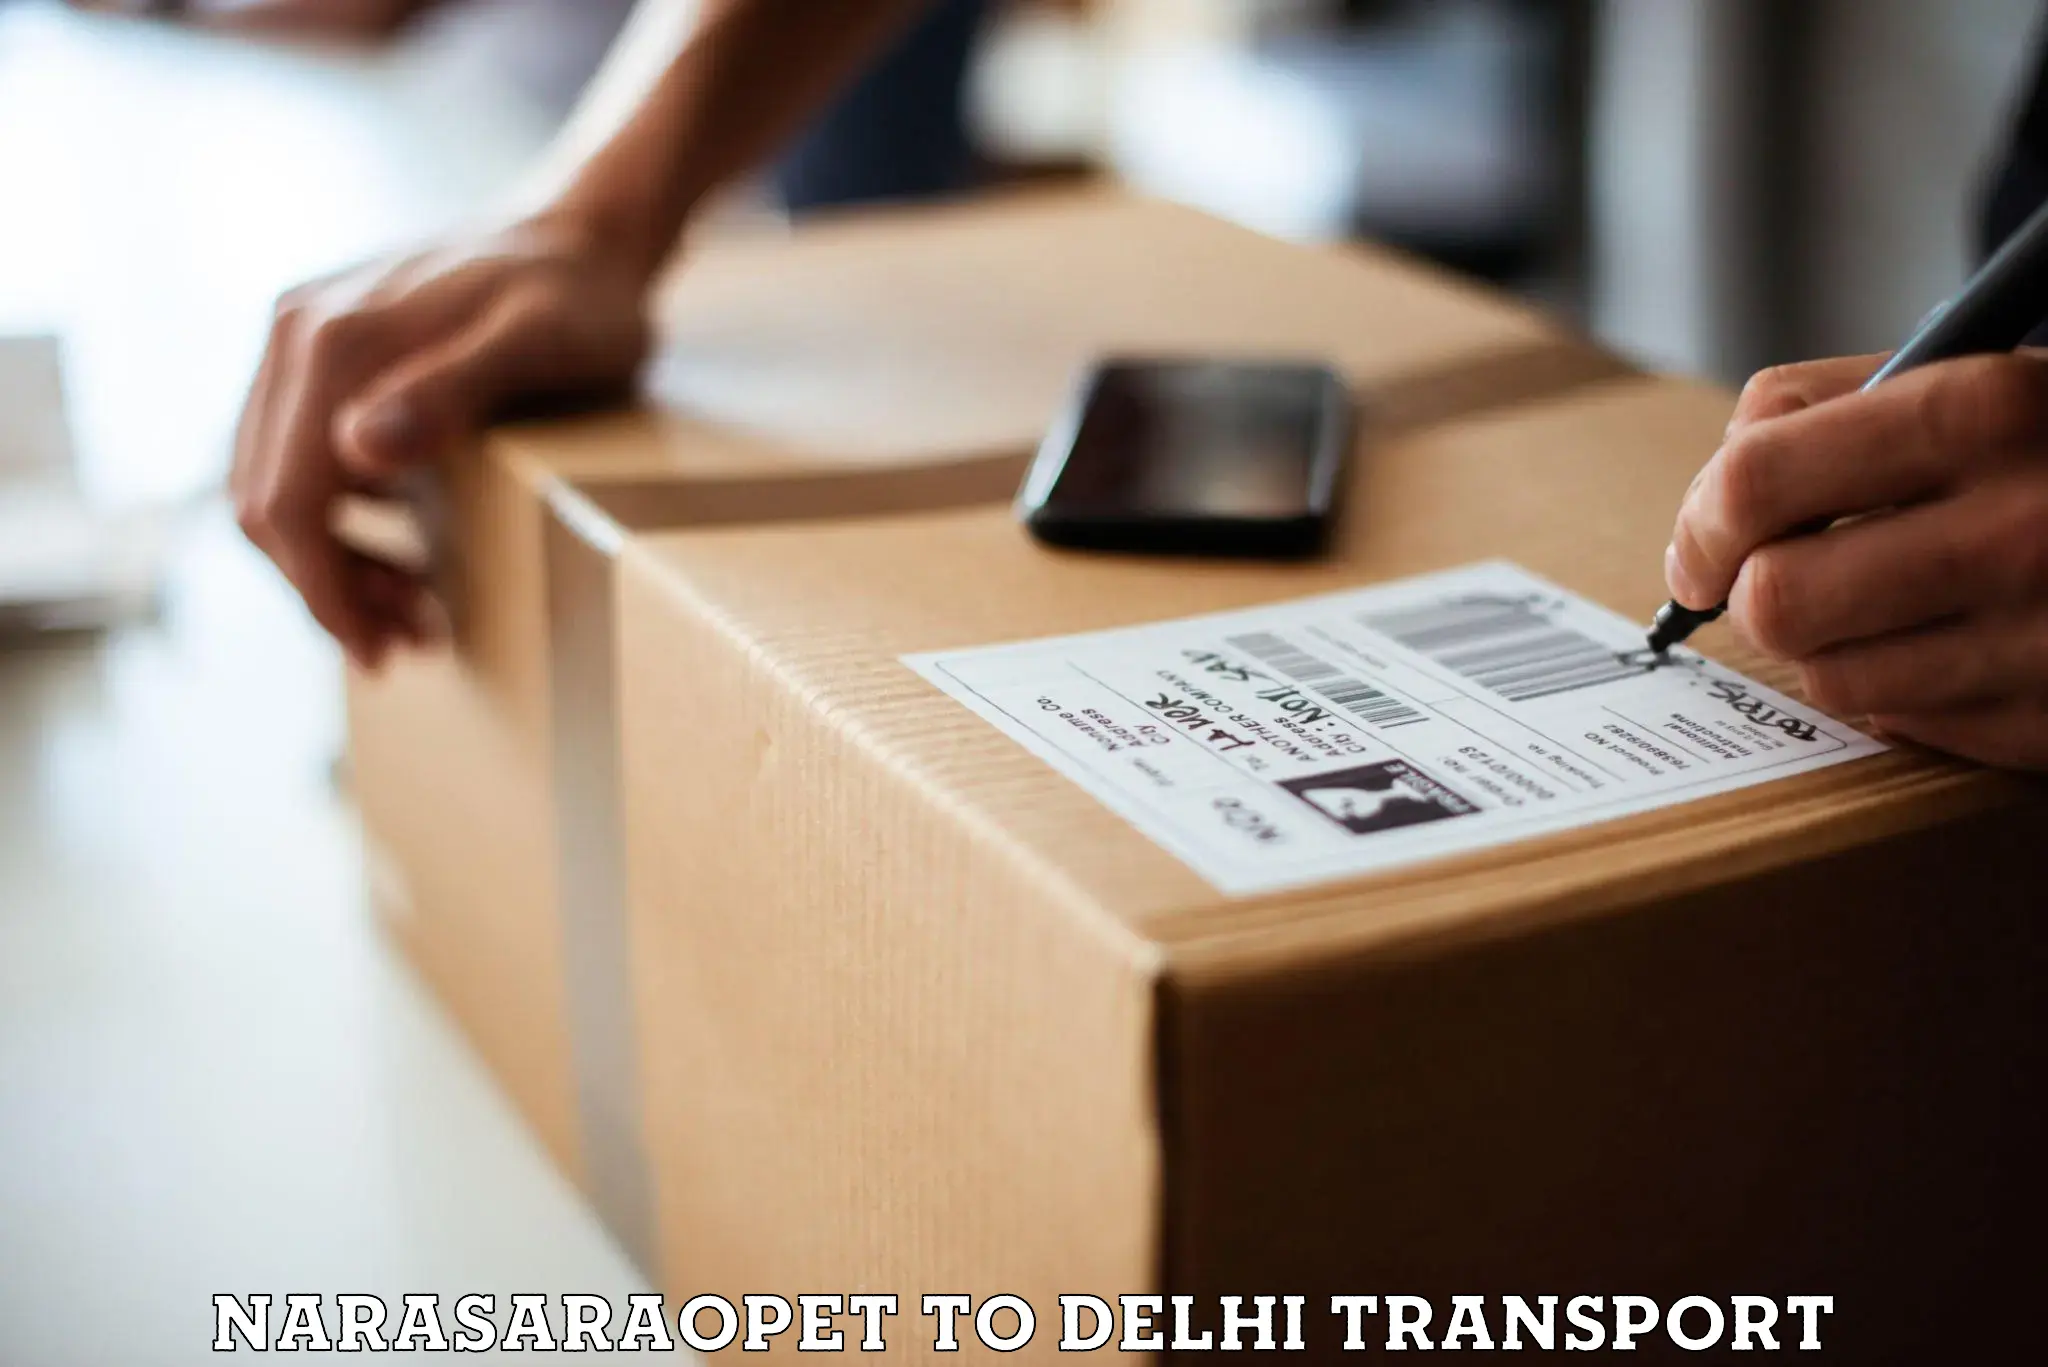 Cycle transportation service Narasaraopet to Delhi